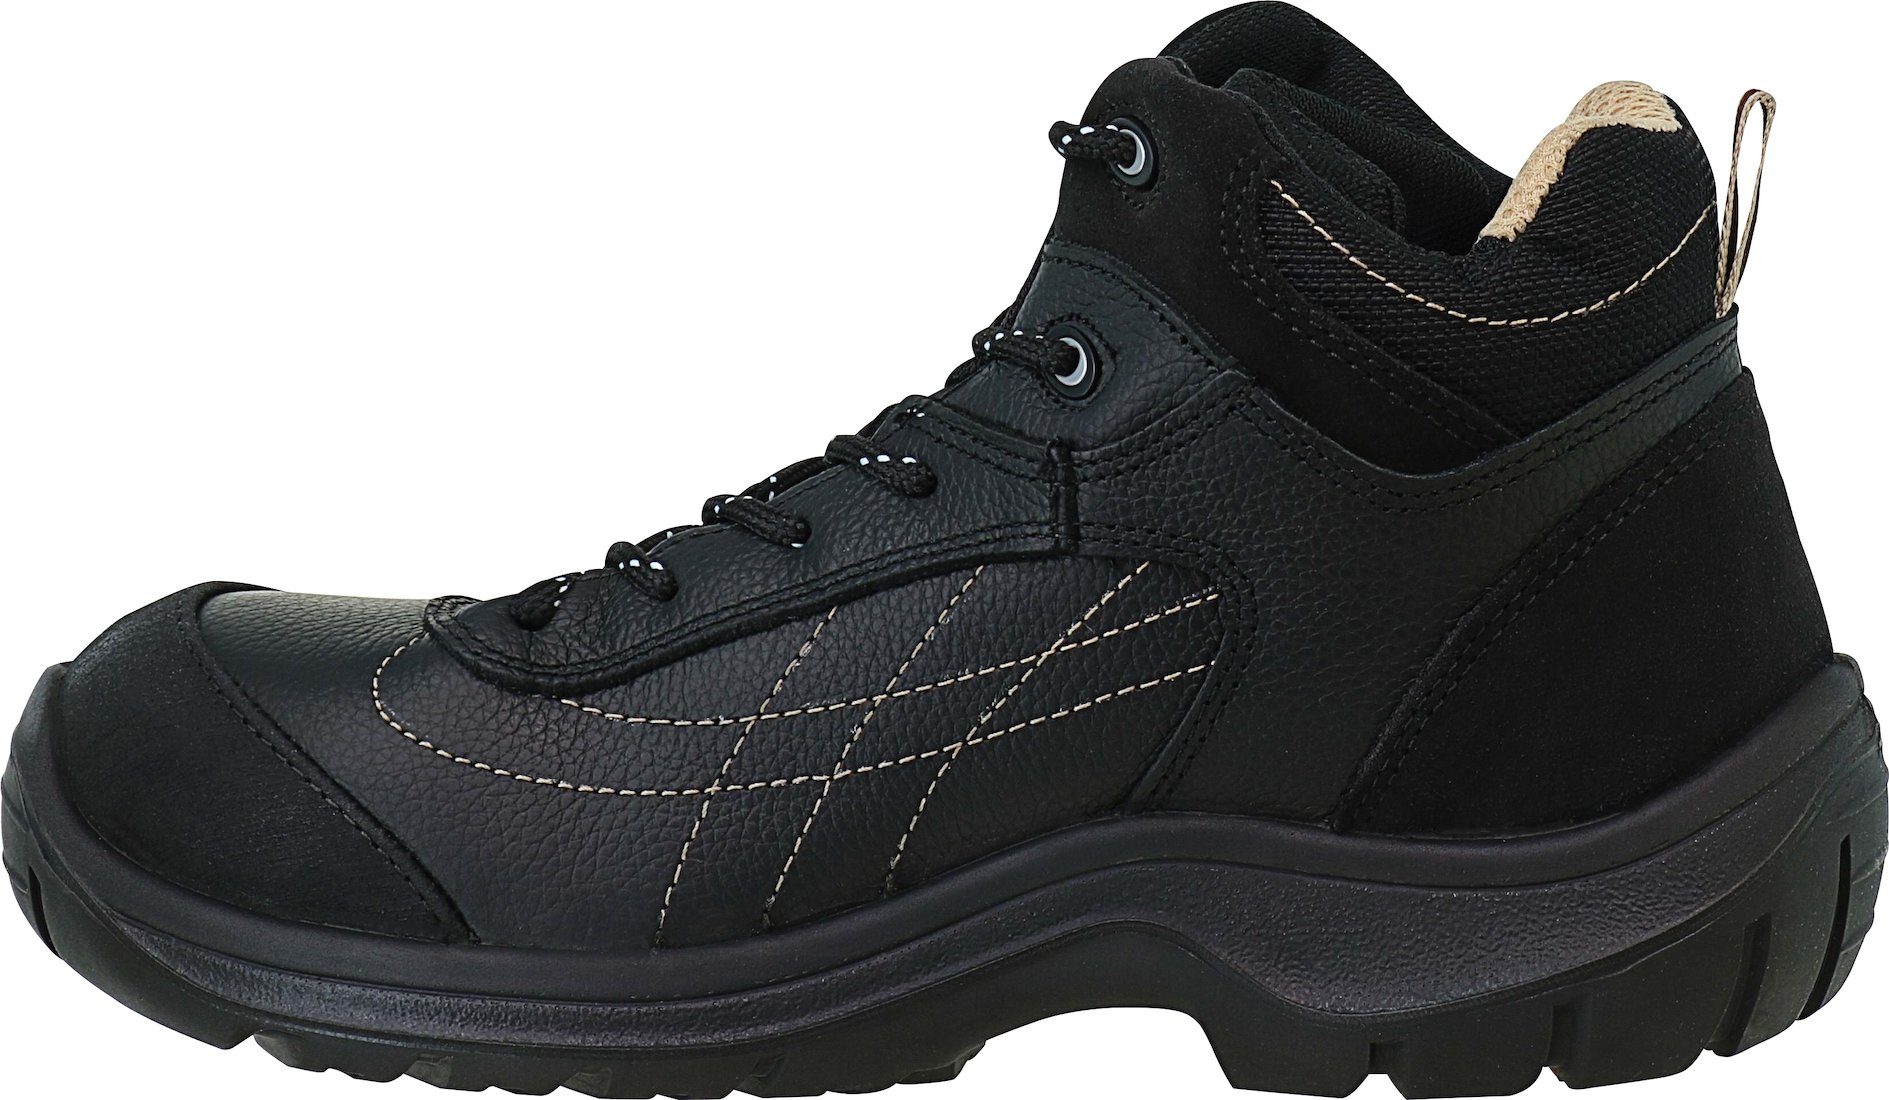 Sicherheitsstiefel Garsport® S3 Arbeitsschuhe schwarz Größe 46 Stiefel, GAR